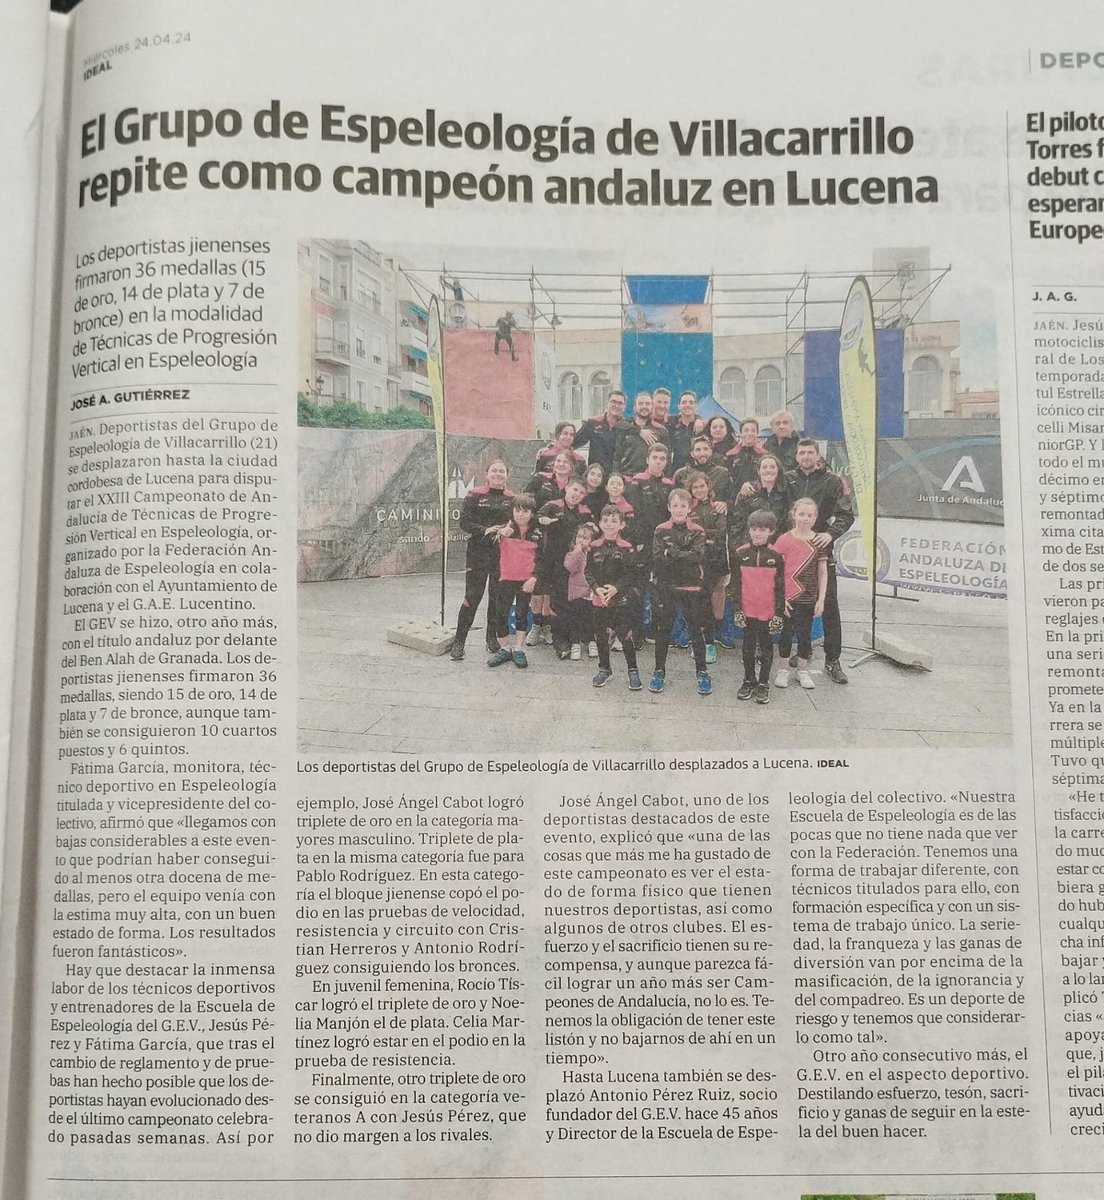 Noticia aparecida en el @ideal_jaen Fe la mano de nuestro amigo @joseantguti. Muchas gracias. #Espeleologia #Villacarrillo #Jaén #campeones #Andalucia